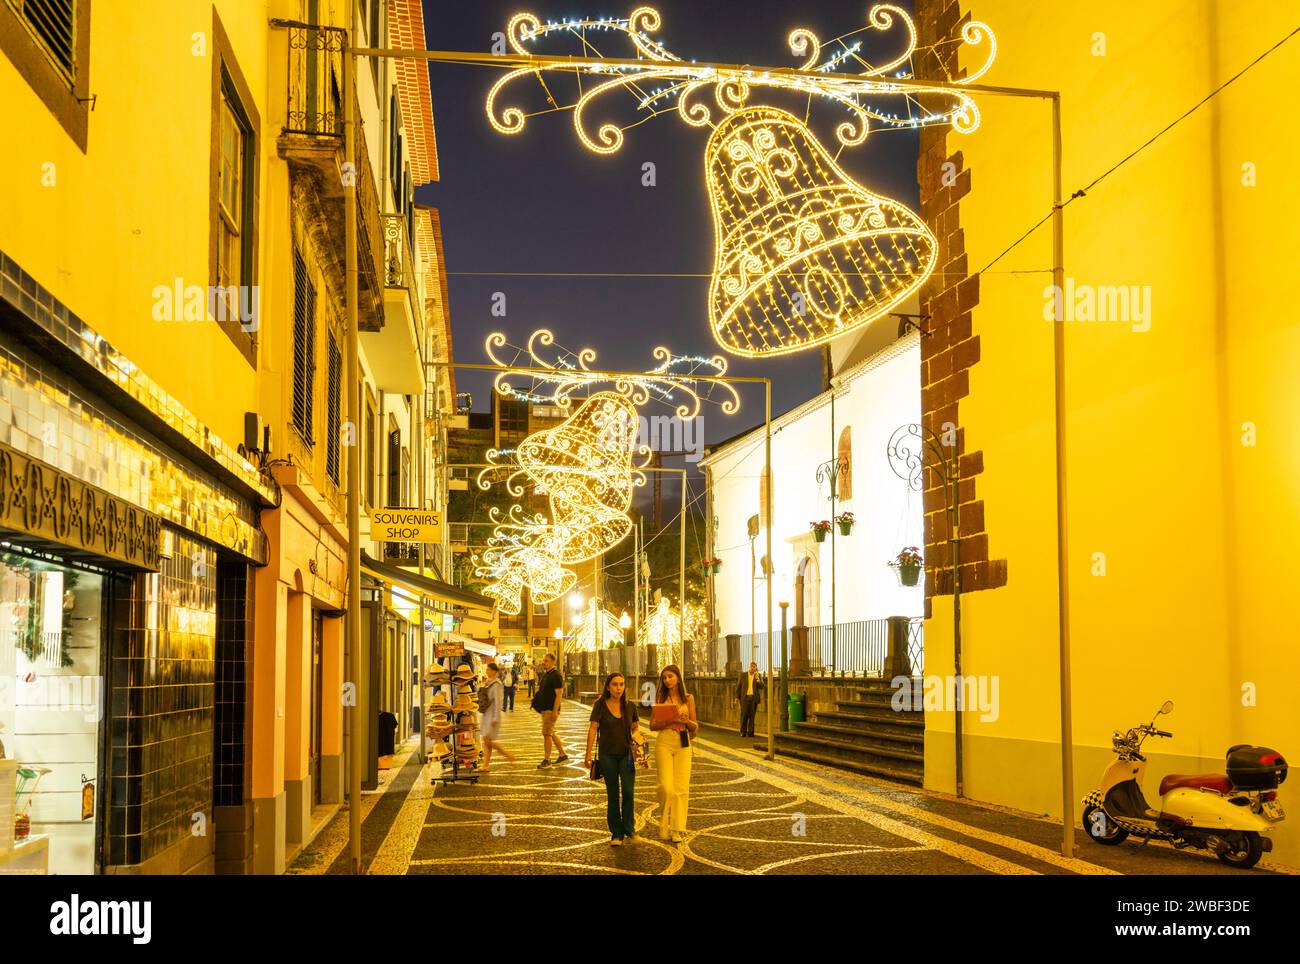 Madeira Funchal Madeira Rua da se illuminata con campane di Natale come decorazioni illuminazione stradale Funchal Madeira Portogallo UE Foto Stock